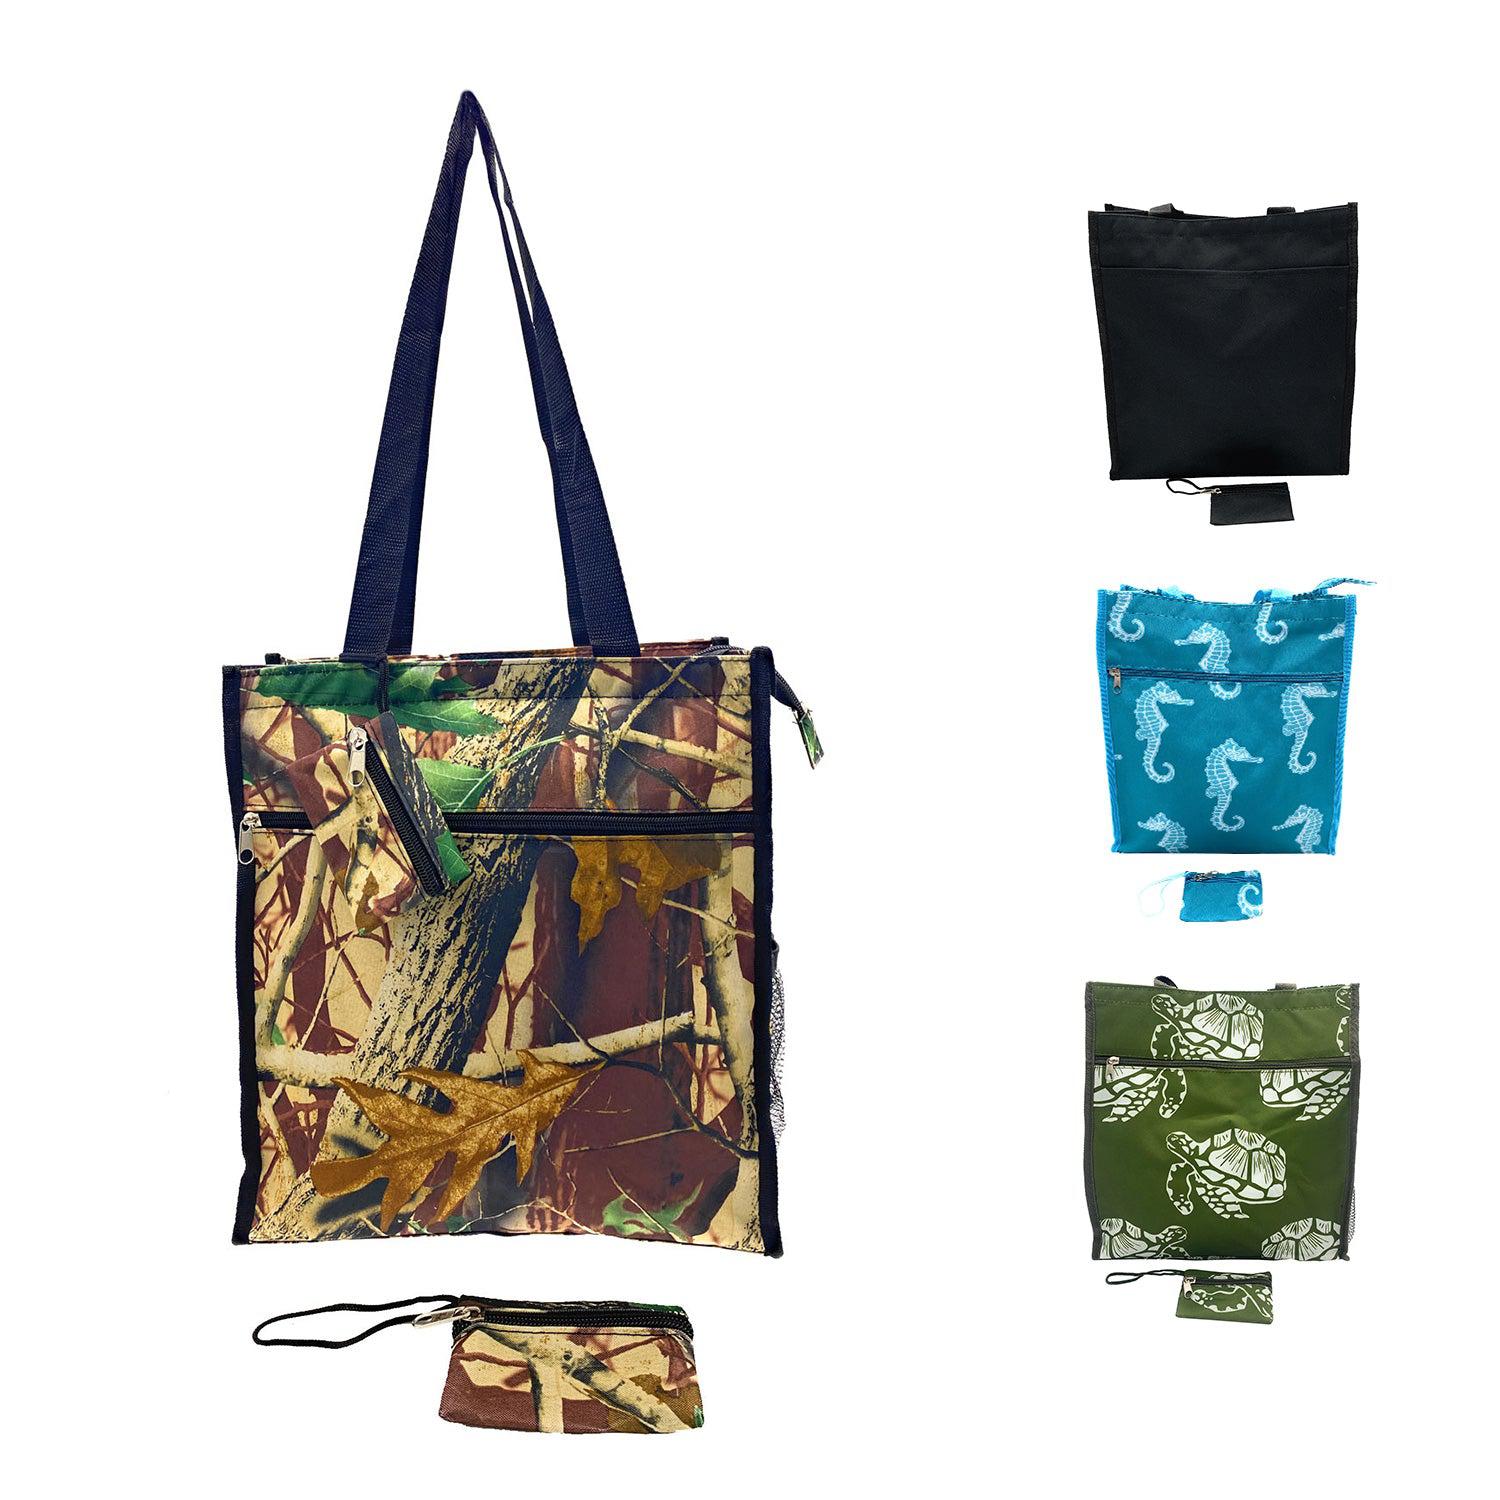 Empire Cove Tote Bag All Purpose Shoulder Bag Shopping Handbag Travel Gym Beach-Casaba Shop